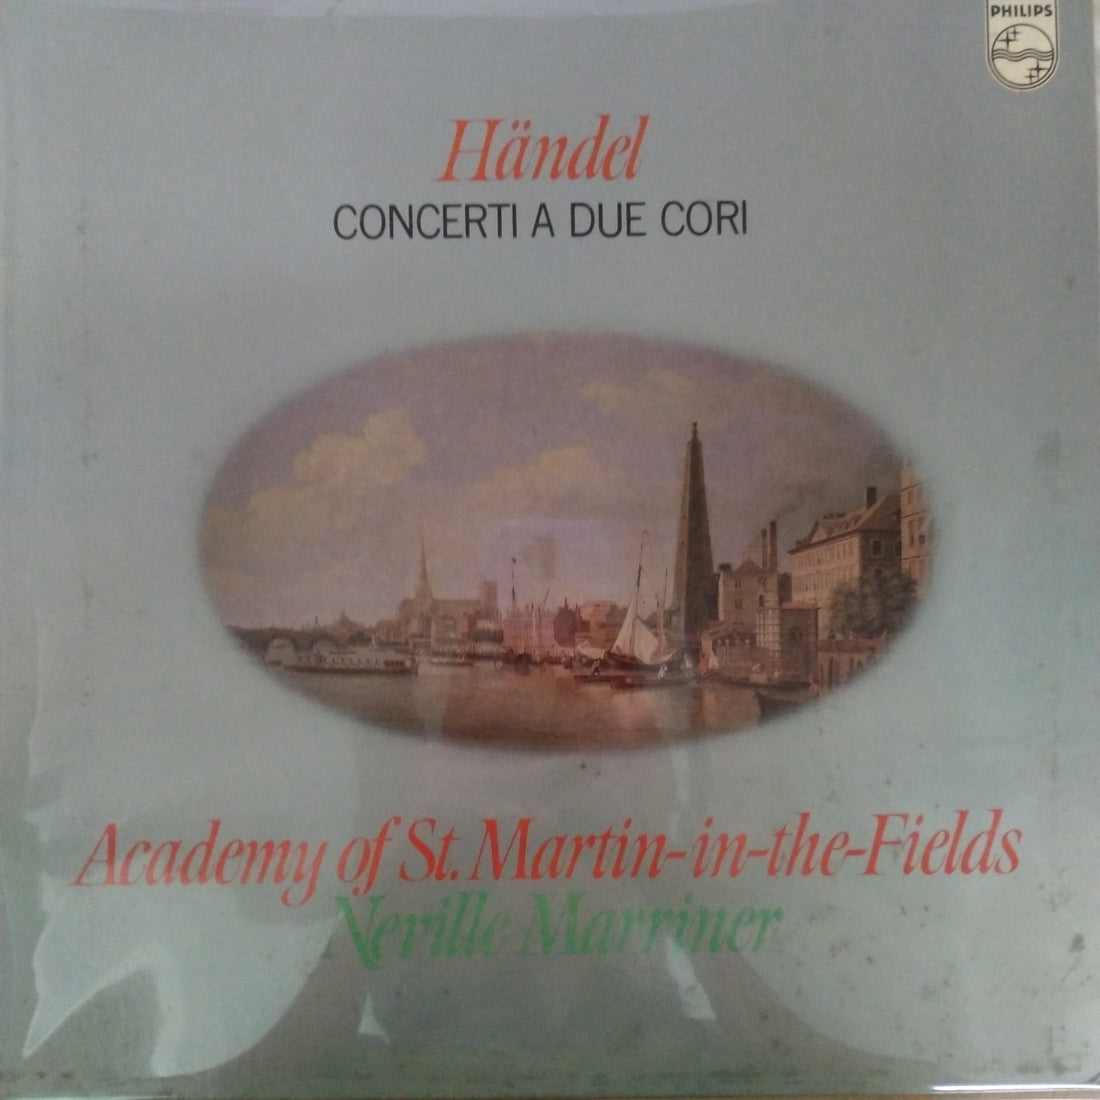 Georg Friedrich Händel, The Academy Of St. Martin-in-the-Fields, Sir Neville Marriner - Concerti A Due Cori (Vinyl) (VG+)